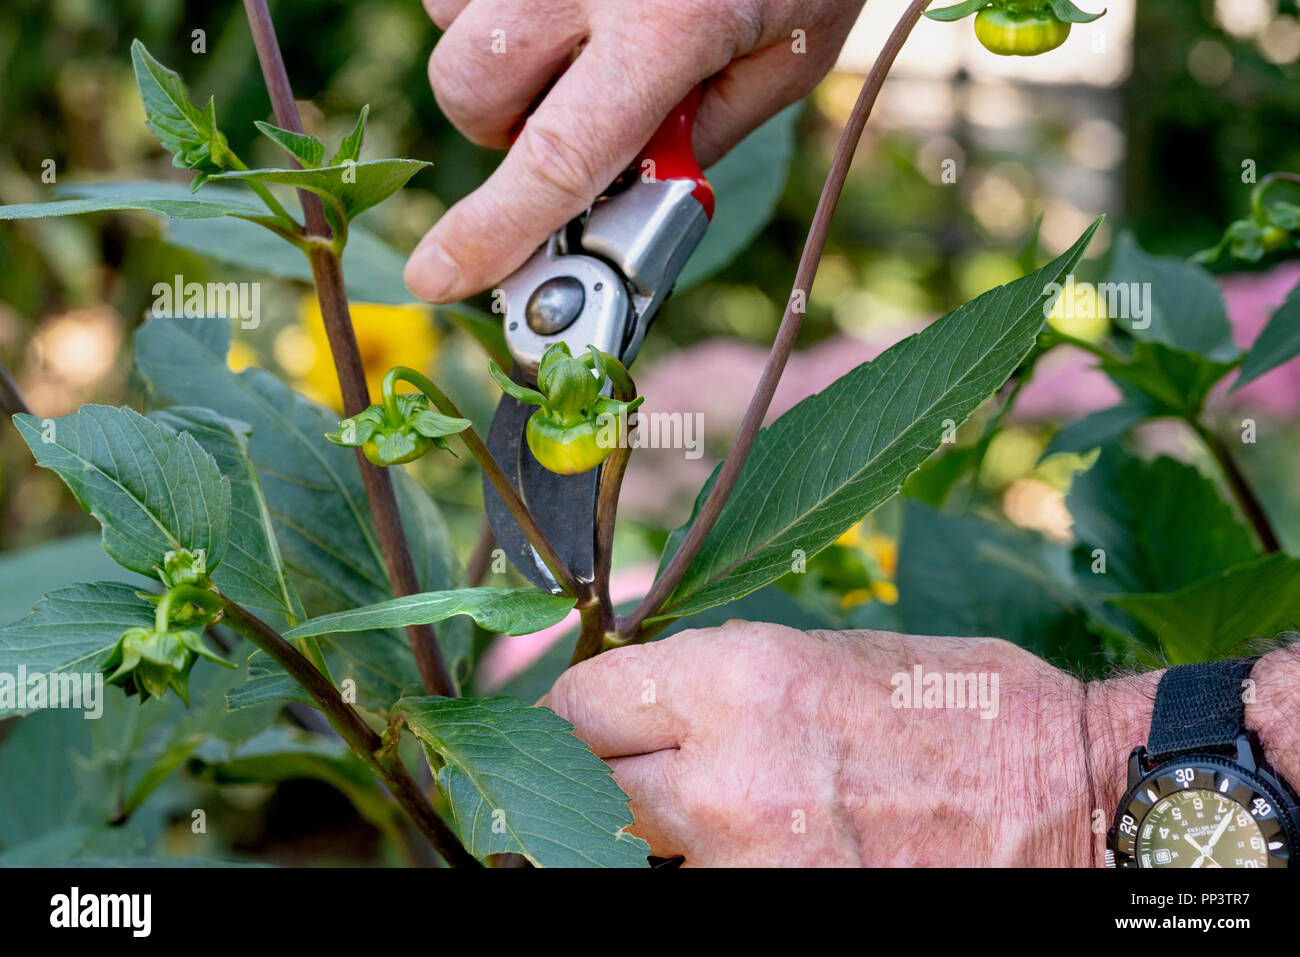 Une plante à l'aide d'ébourgeonnage dahlia sécateurs pour éliminer les petits boutons de fleurs. Banque D'Images